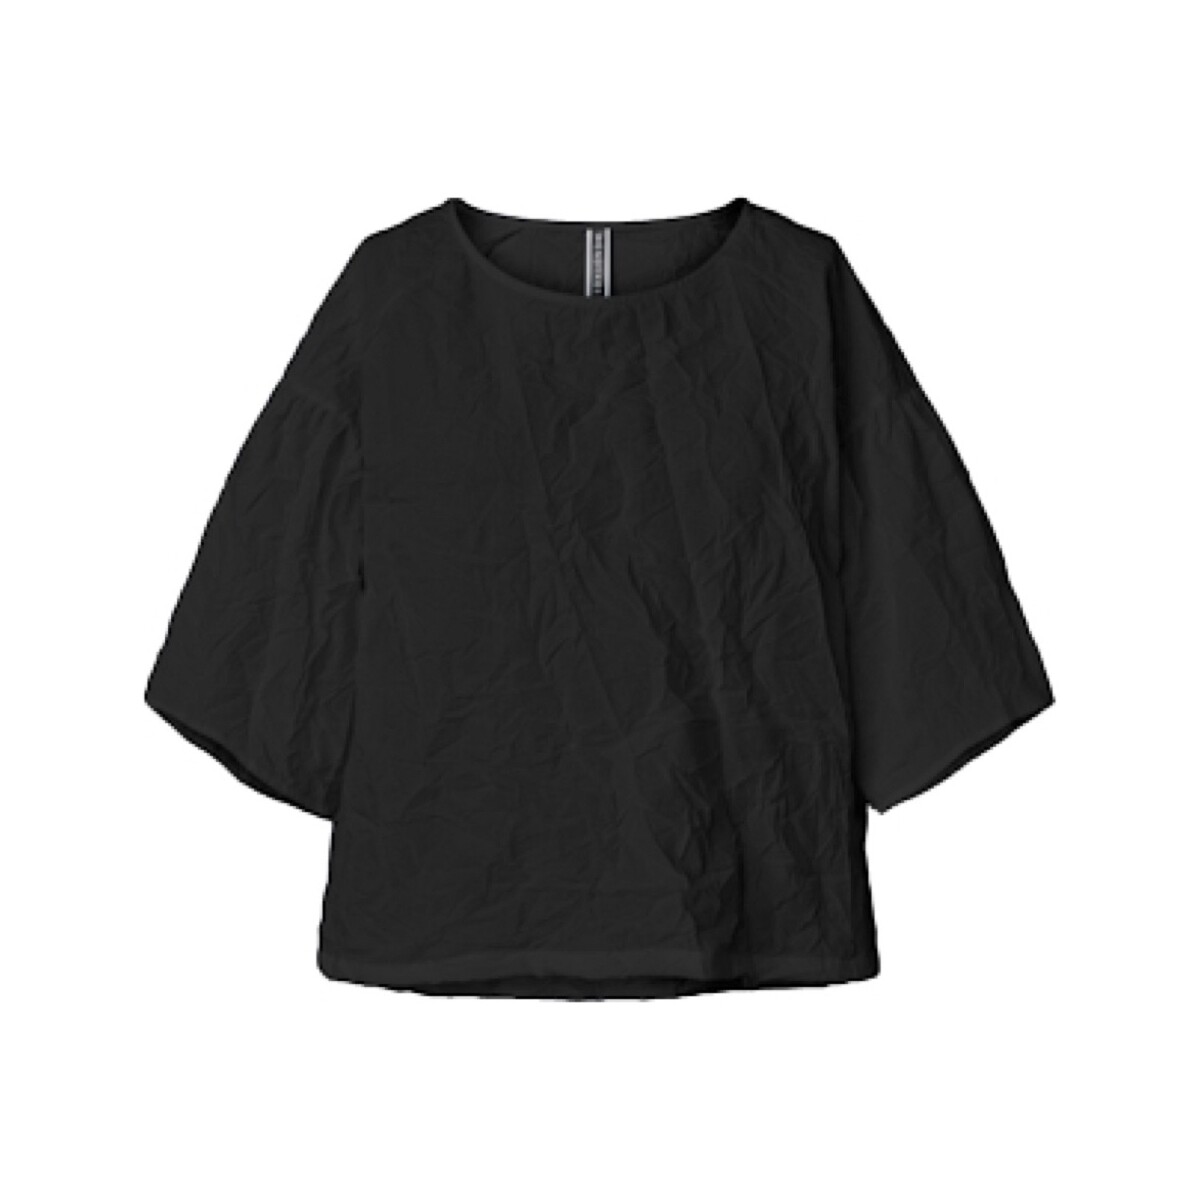 Textiel Dames Tops / Blousjes Wendy Trendy Top 221624 - Black Zwart